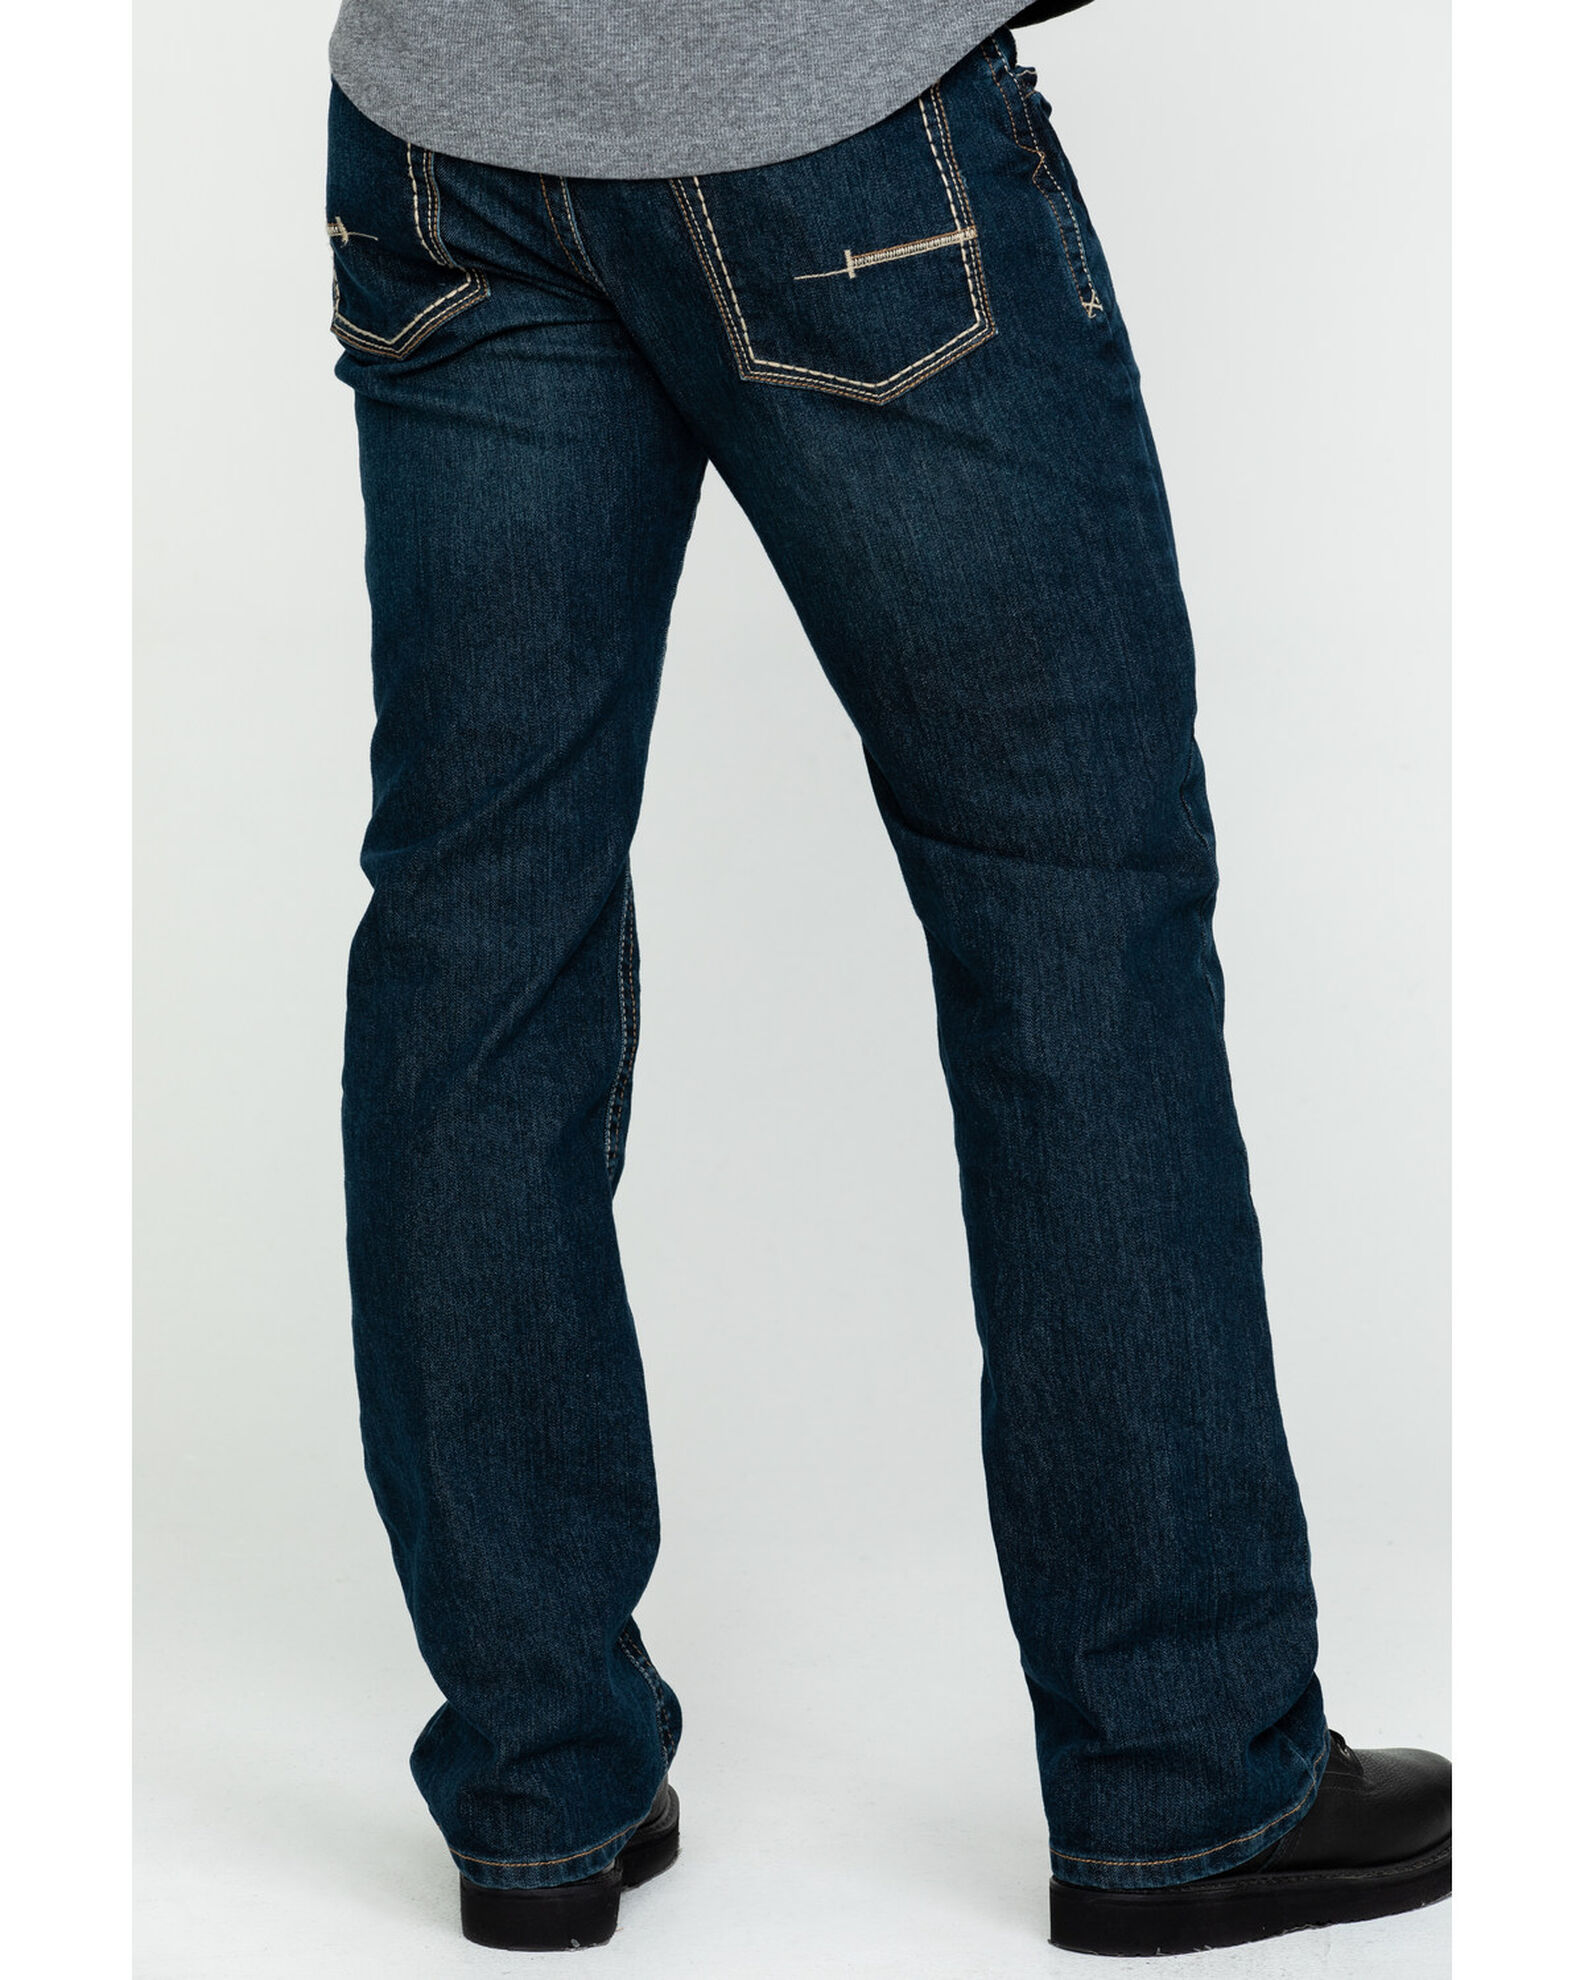 Product Name: Ariat Men's Rebar M4 Low Rise Boot Cut Jeans